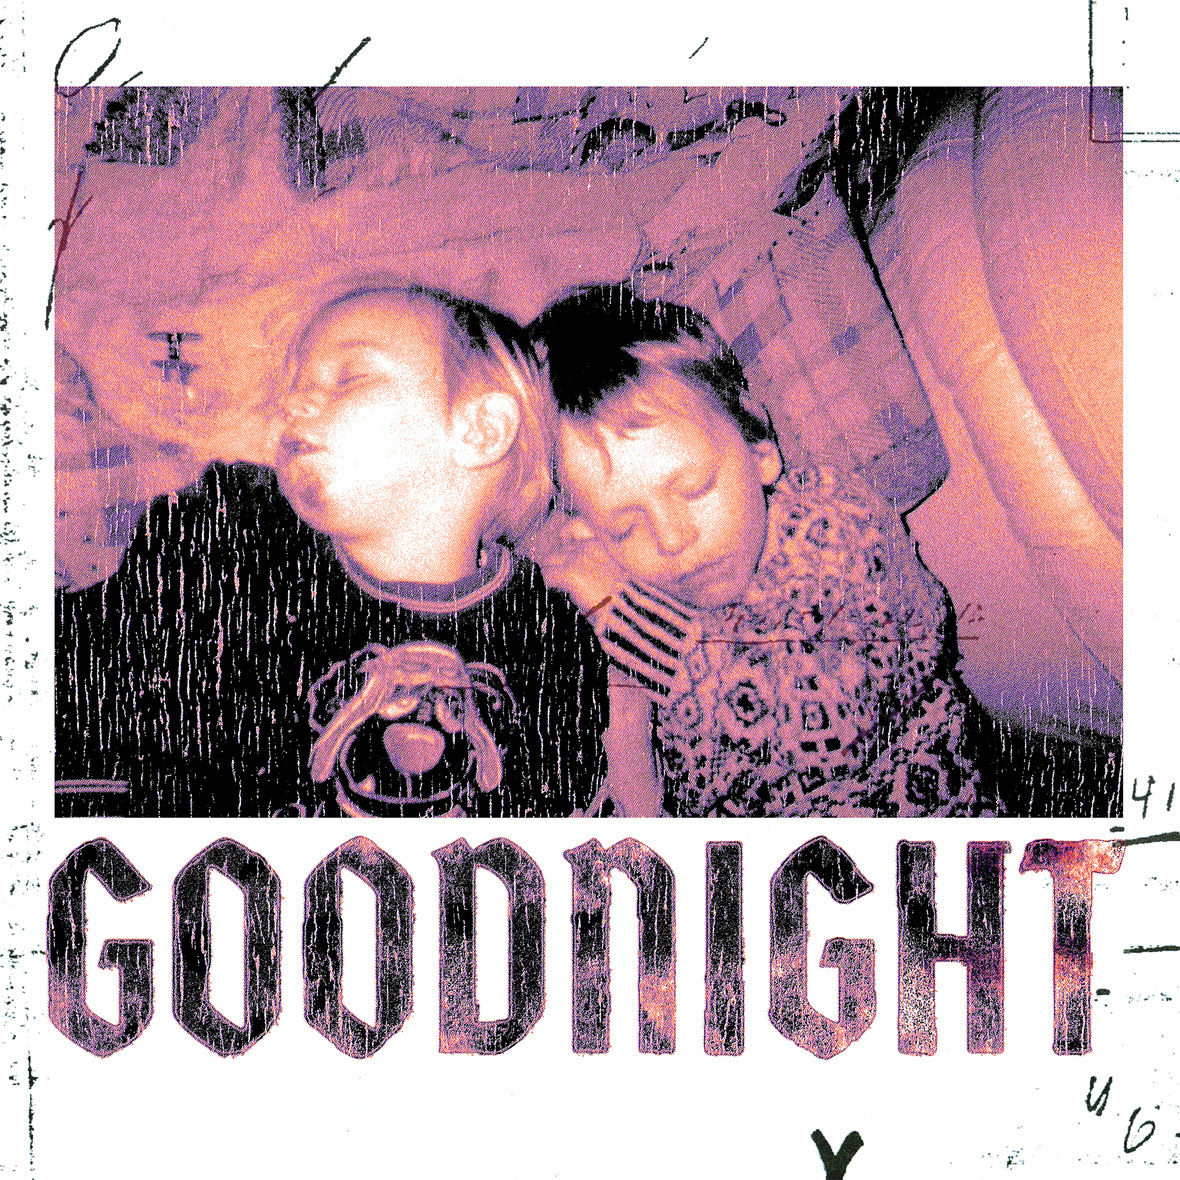 Captain Kaiser - Goodnight Single Cover